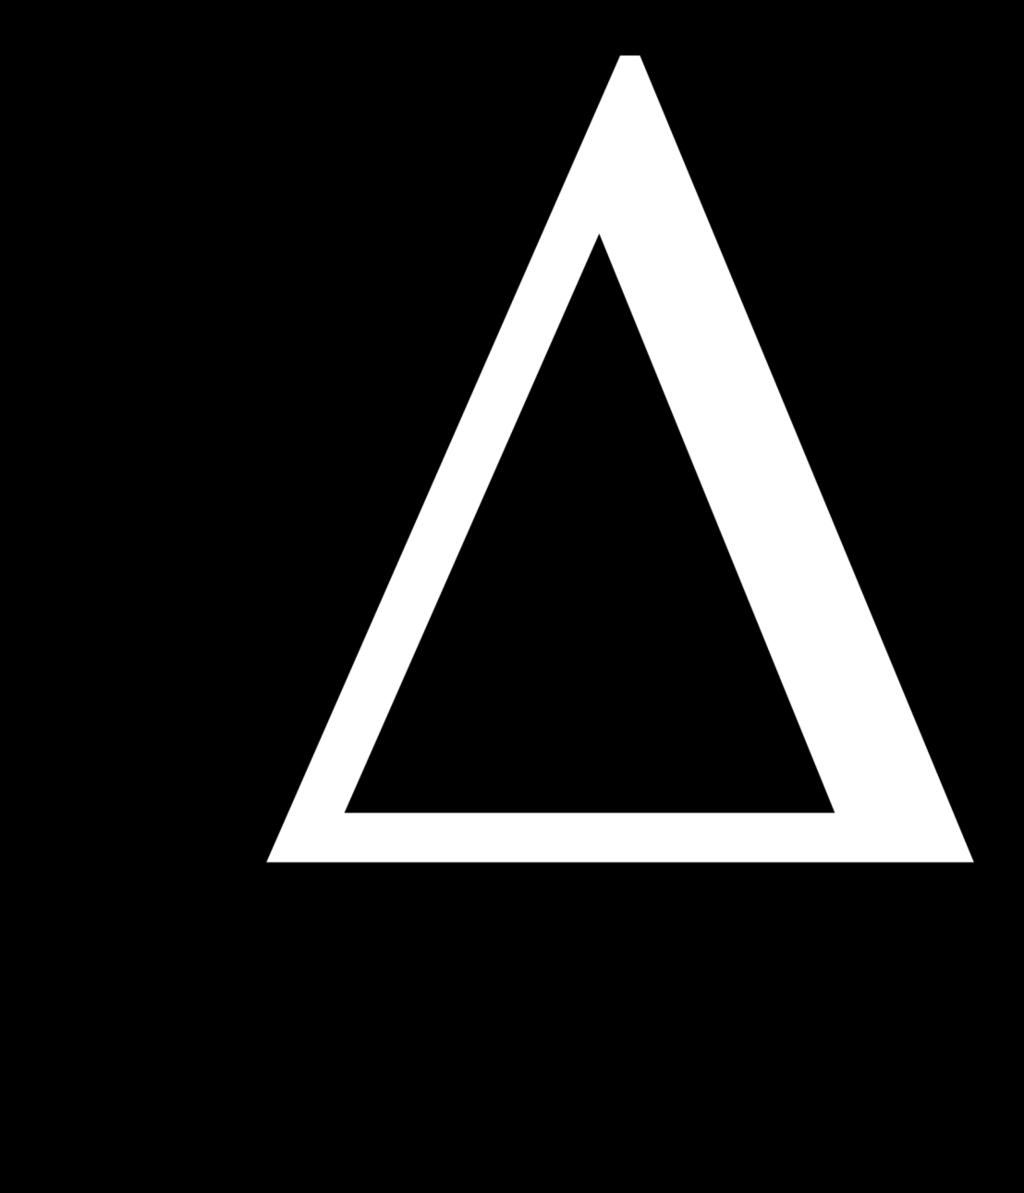 Símbolo de Cambio Delta (mayúscula Δ) es la cuarta letra del alfabeto griego En matemáticas y ciencias aplicadas, delta es utilizada delante de una